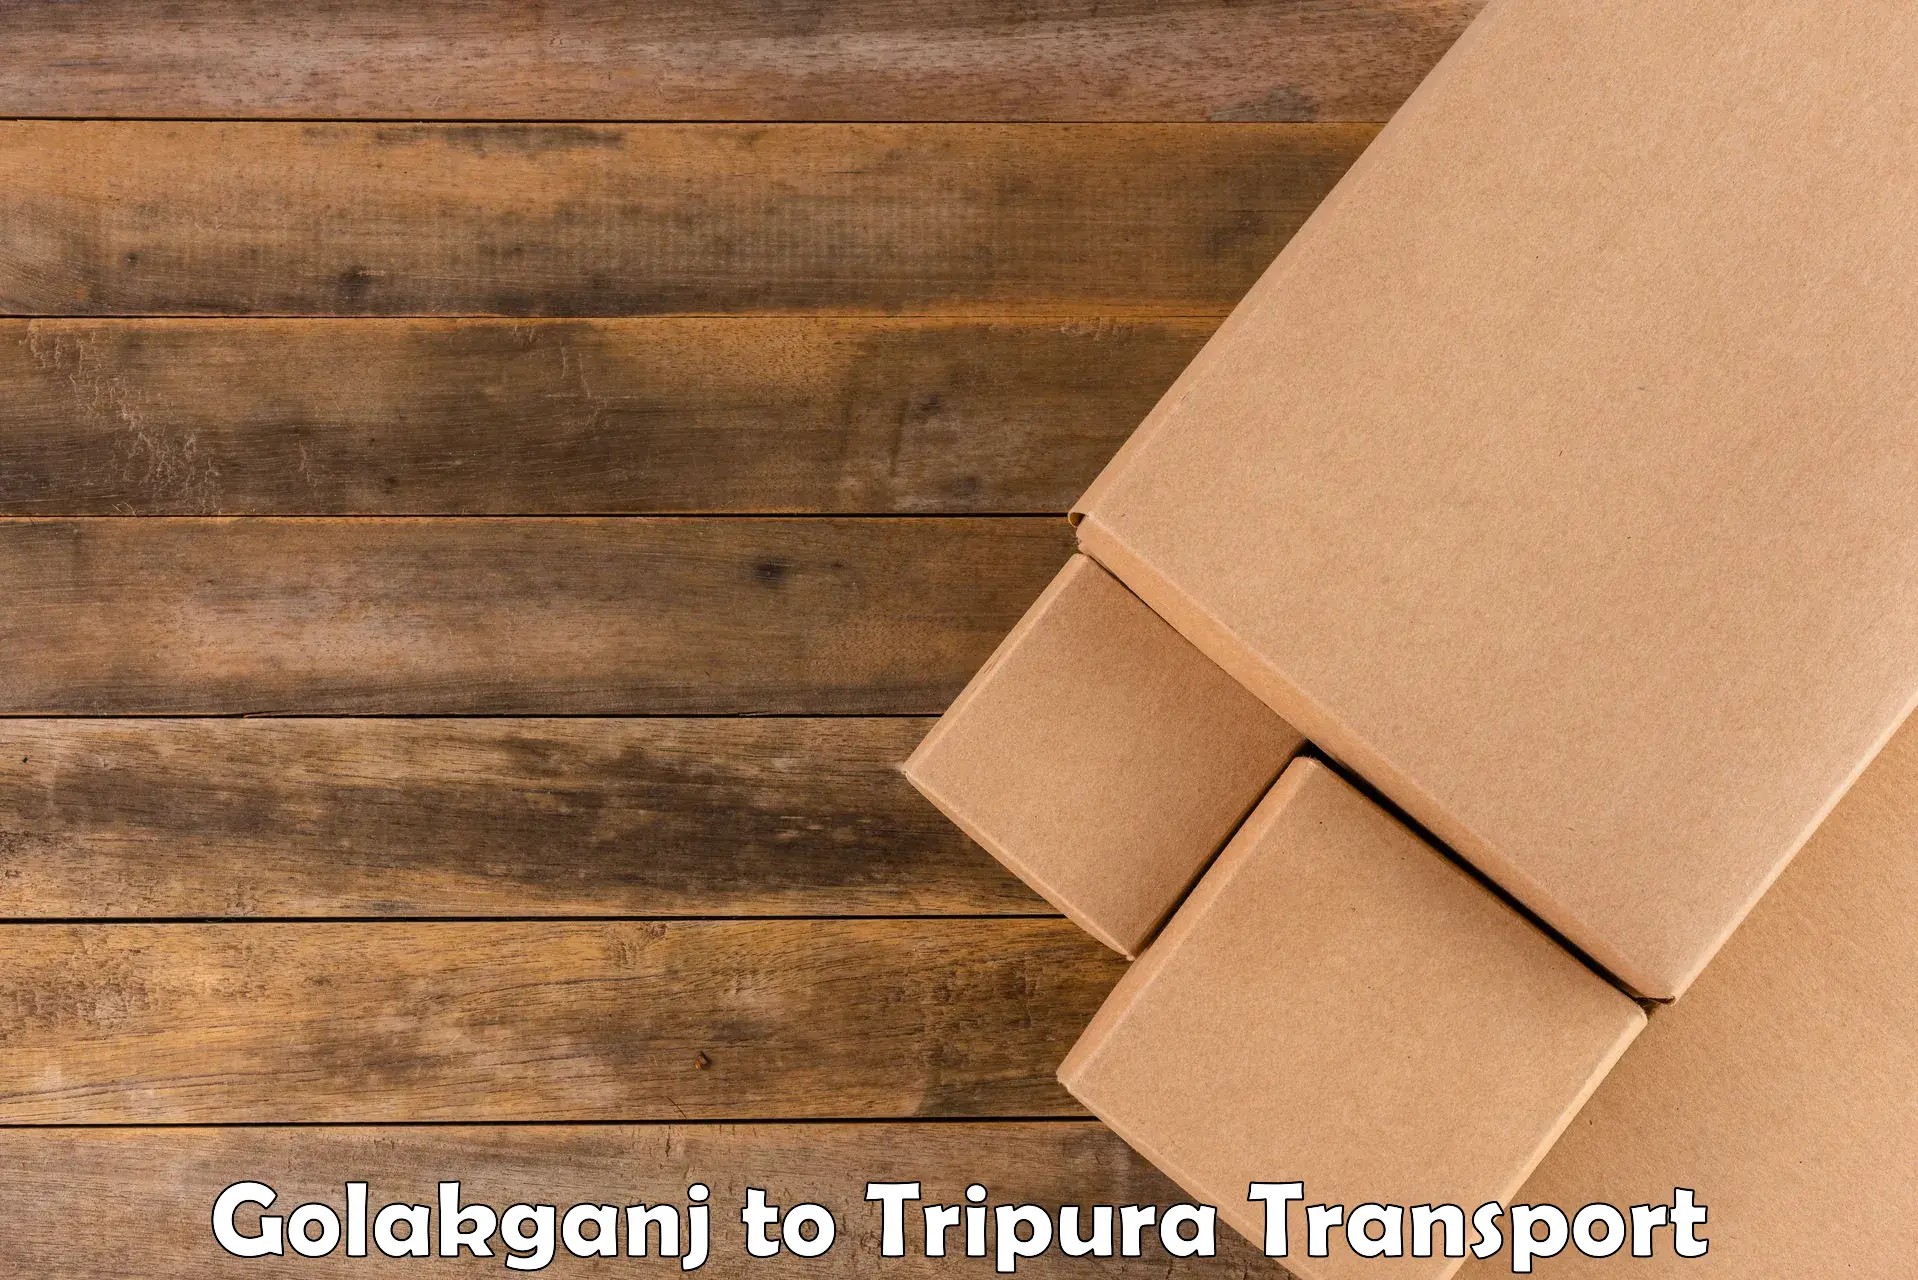 Road transport services Golakganj to Amarpur